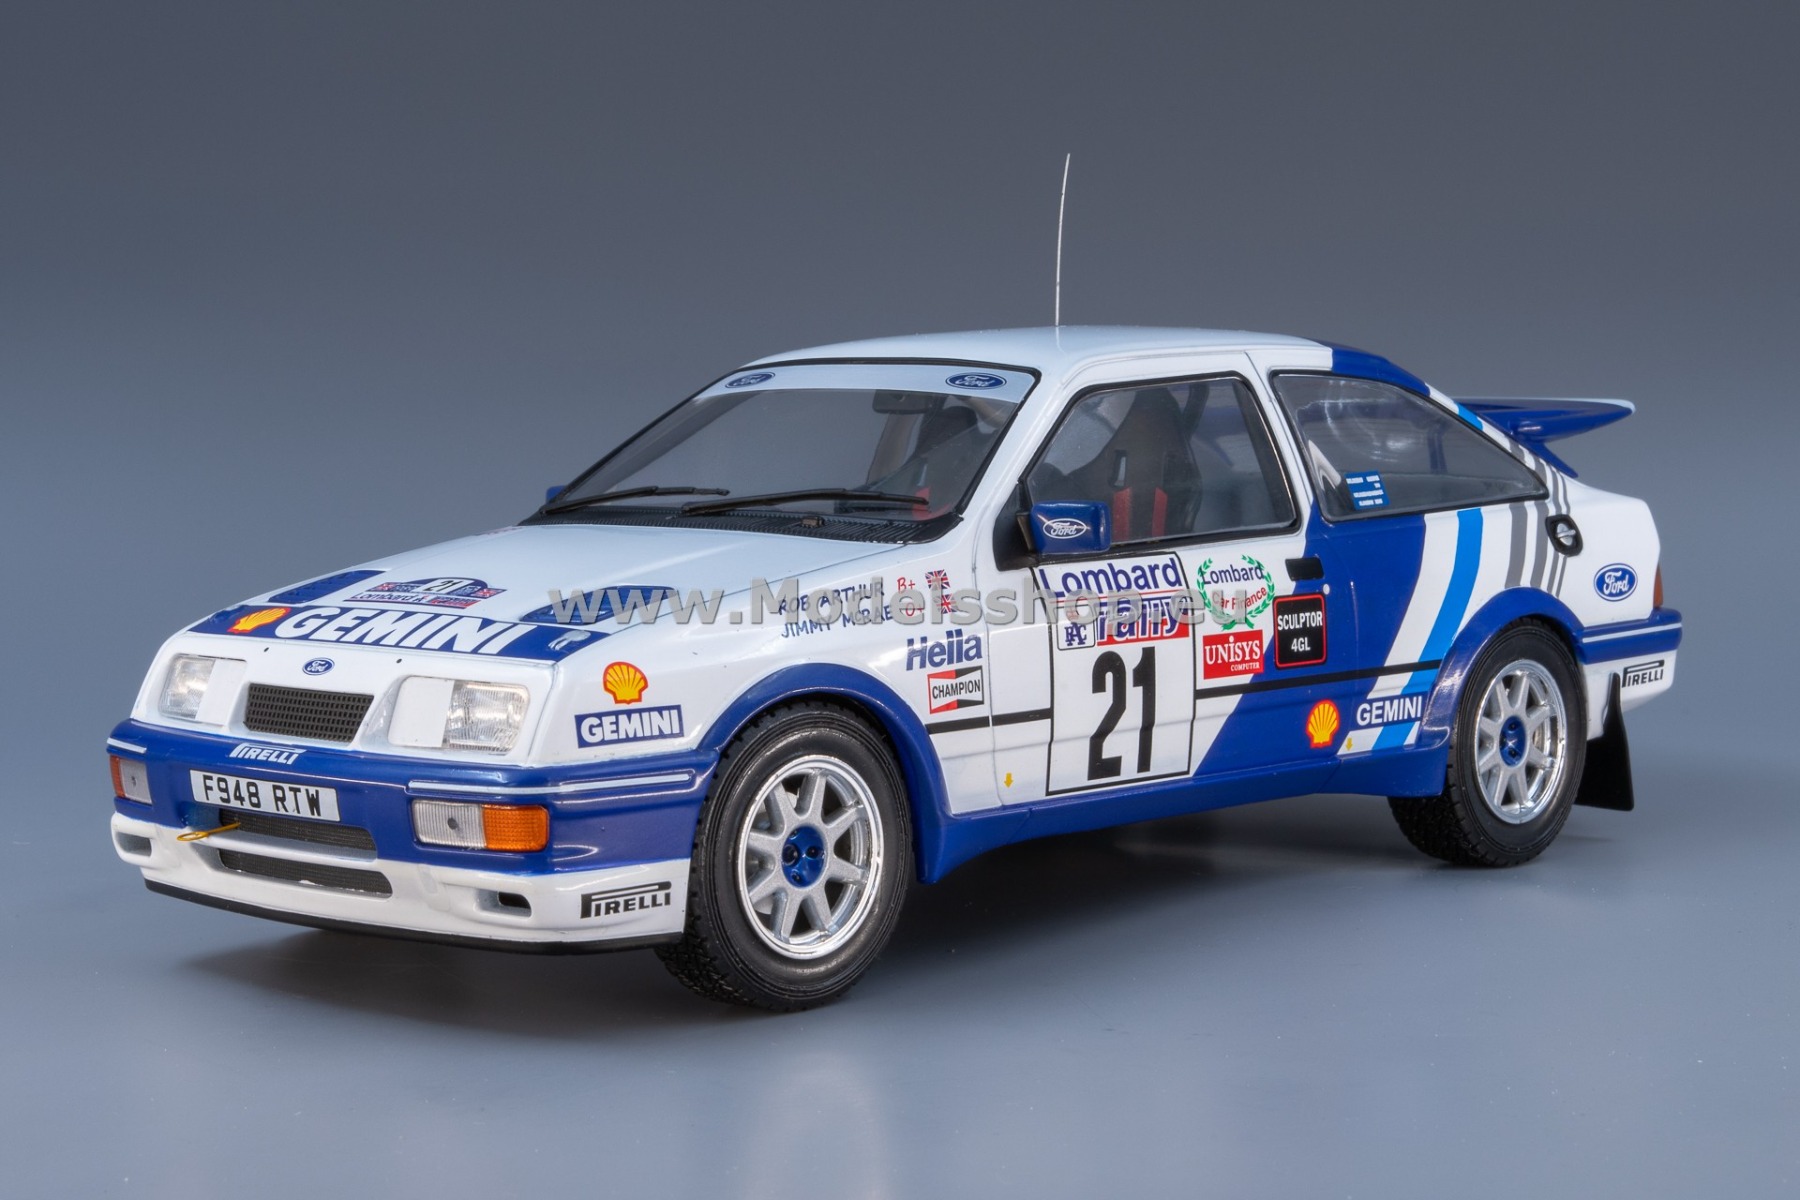 IXO18RMC079A.20 Ford Sierra RS Cosworth, RHD, No.27, Rally WM, RAC Rally 1989, J.McRae/R. Arthur